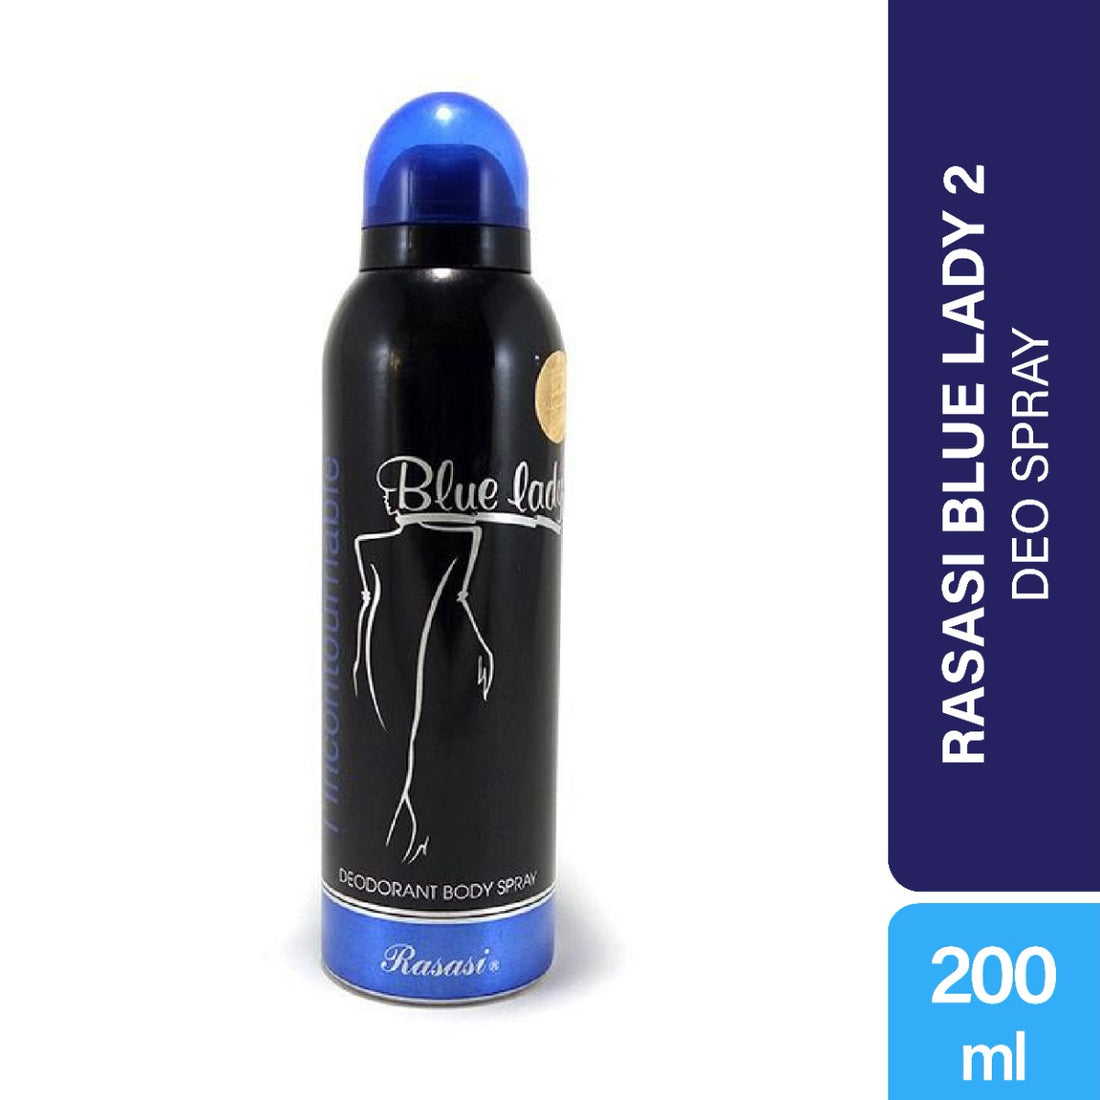 Rasasi Blue Lady 2 Deodorant Body Spray for Women (200ml)